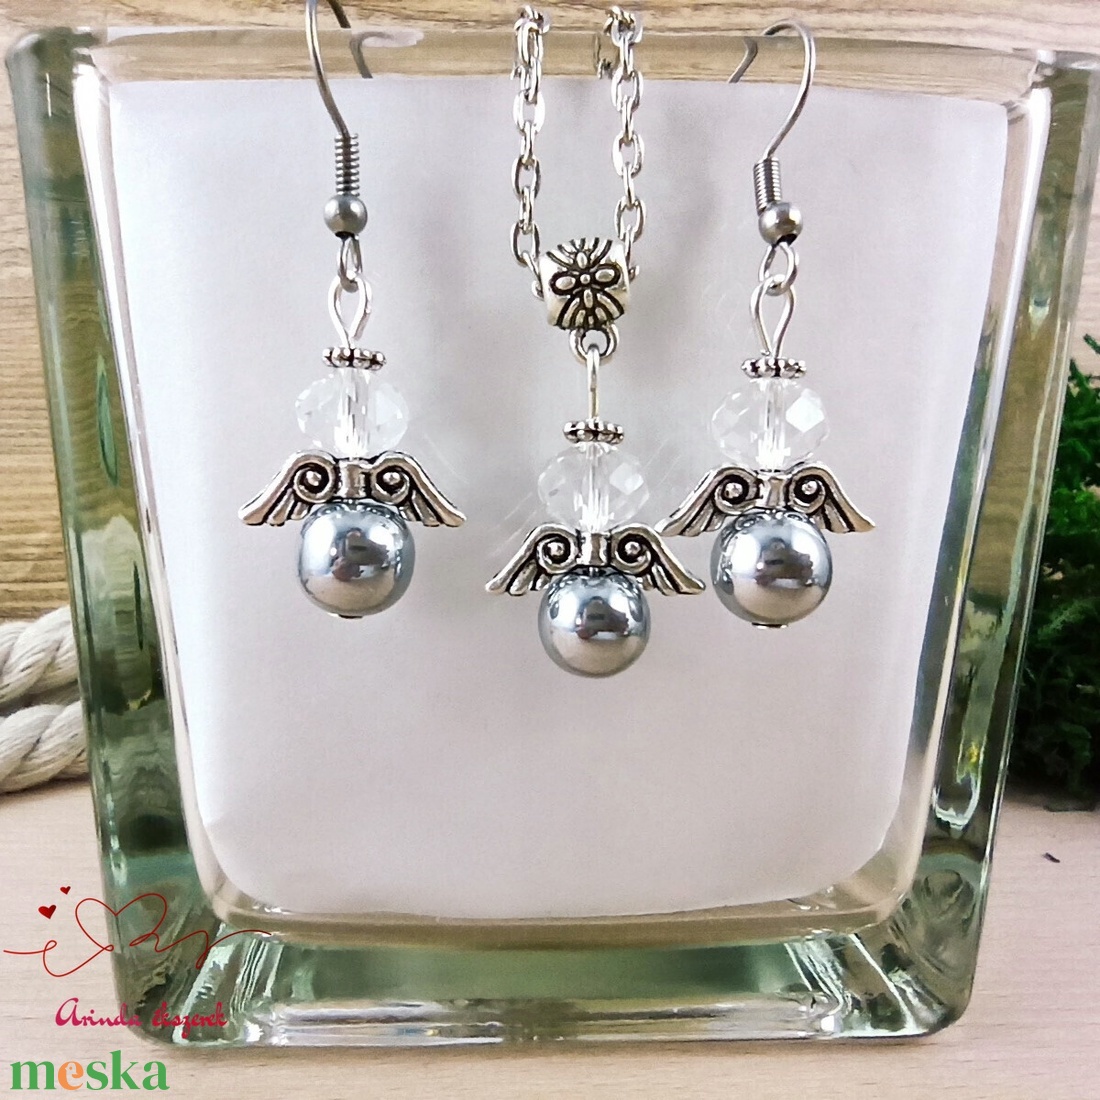 Ezüst hematit ásvány angyal nyaklánc fülbevaló szett karácsonyi ajándék ötlet nőnek lánynak - ékszer - ékszerszett - Meska.hu